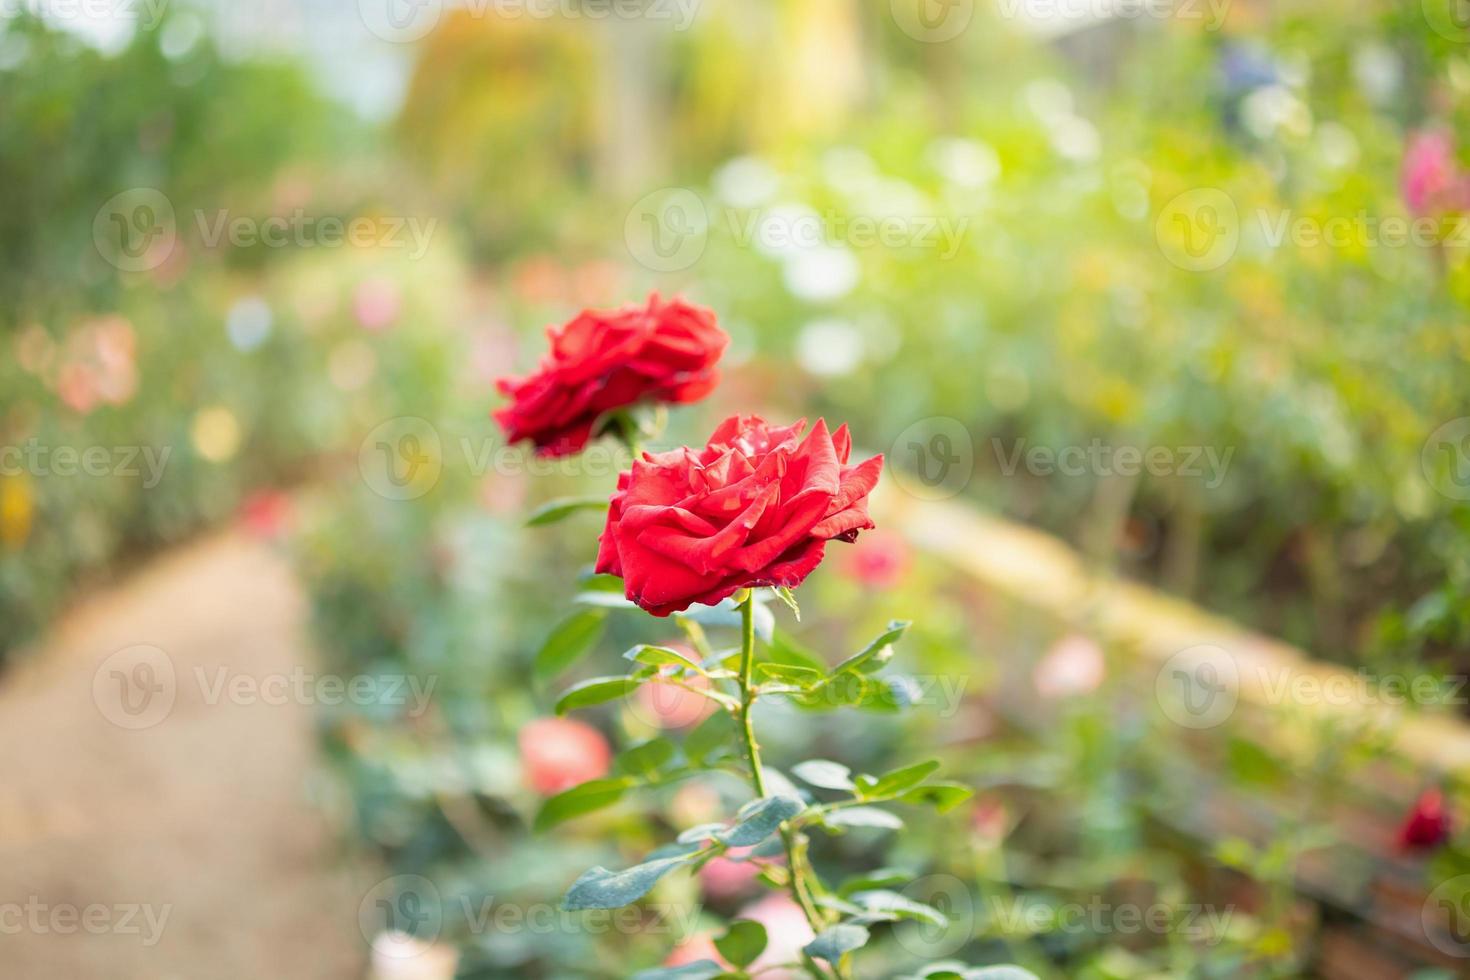 mooi rood rozen bloem in de tuin foto